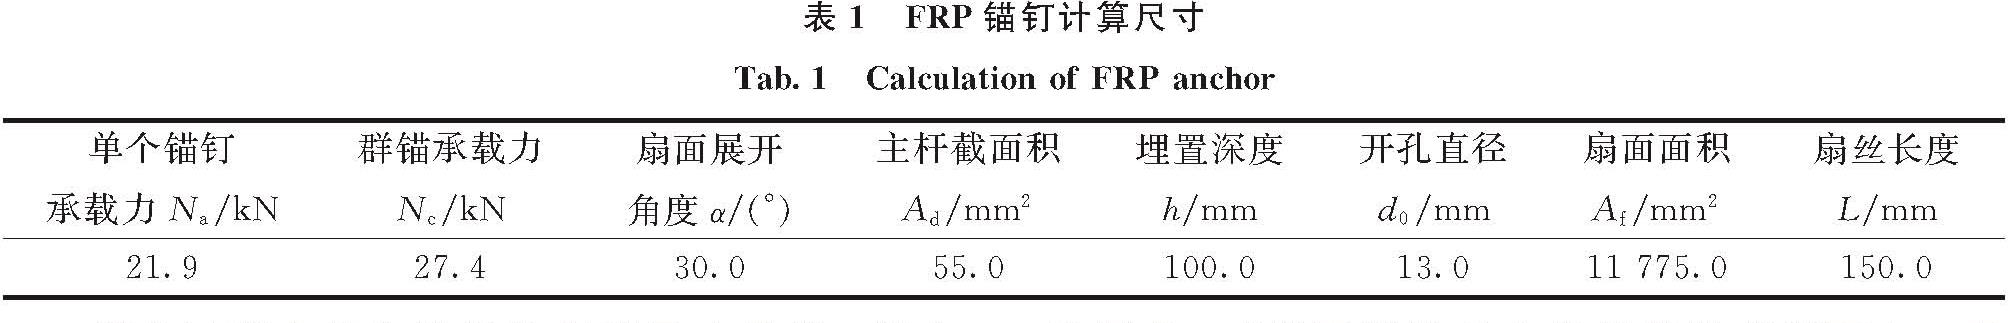 表1 FRP锚钉计算尺寸<br/>Tab.1 Calculation of FRP anchor